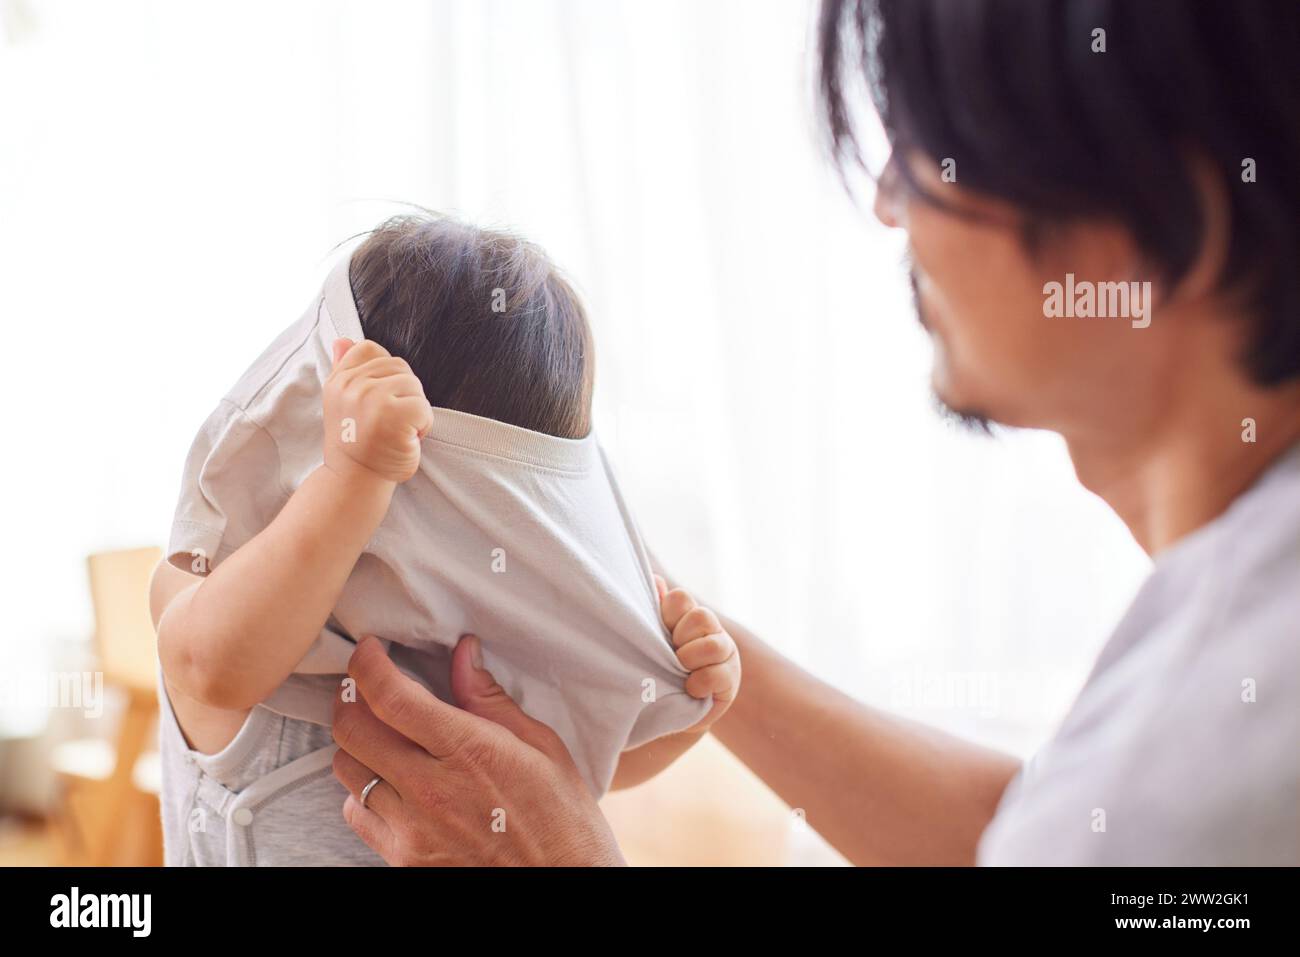 Papa asiatique aidant l'enfant à s'habiller Banque D'Images